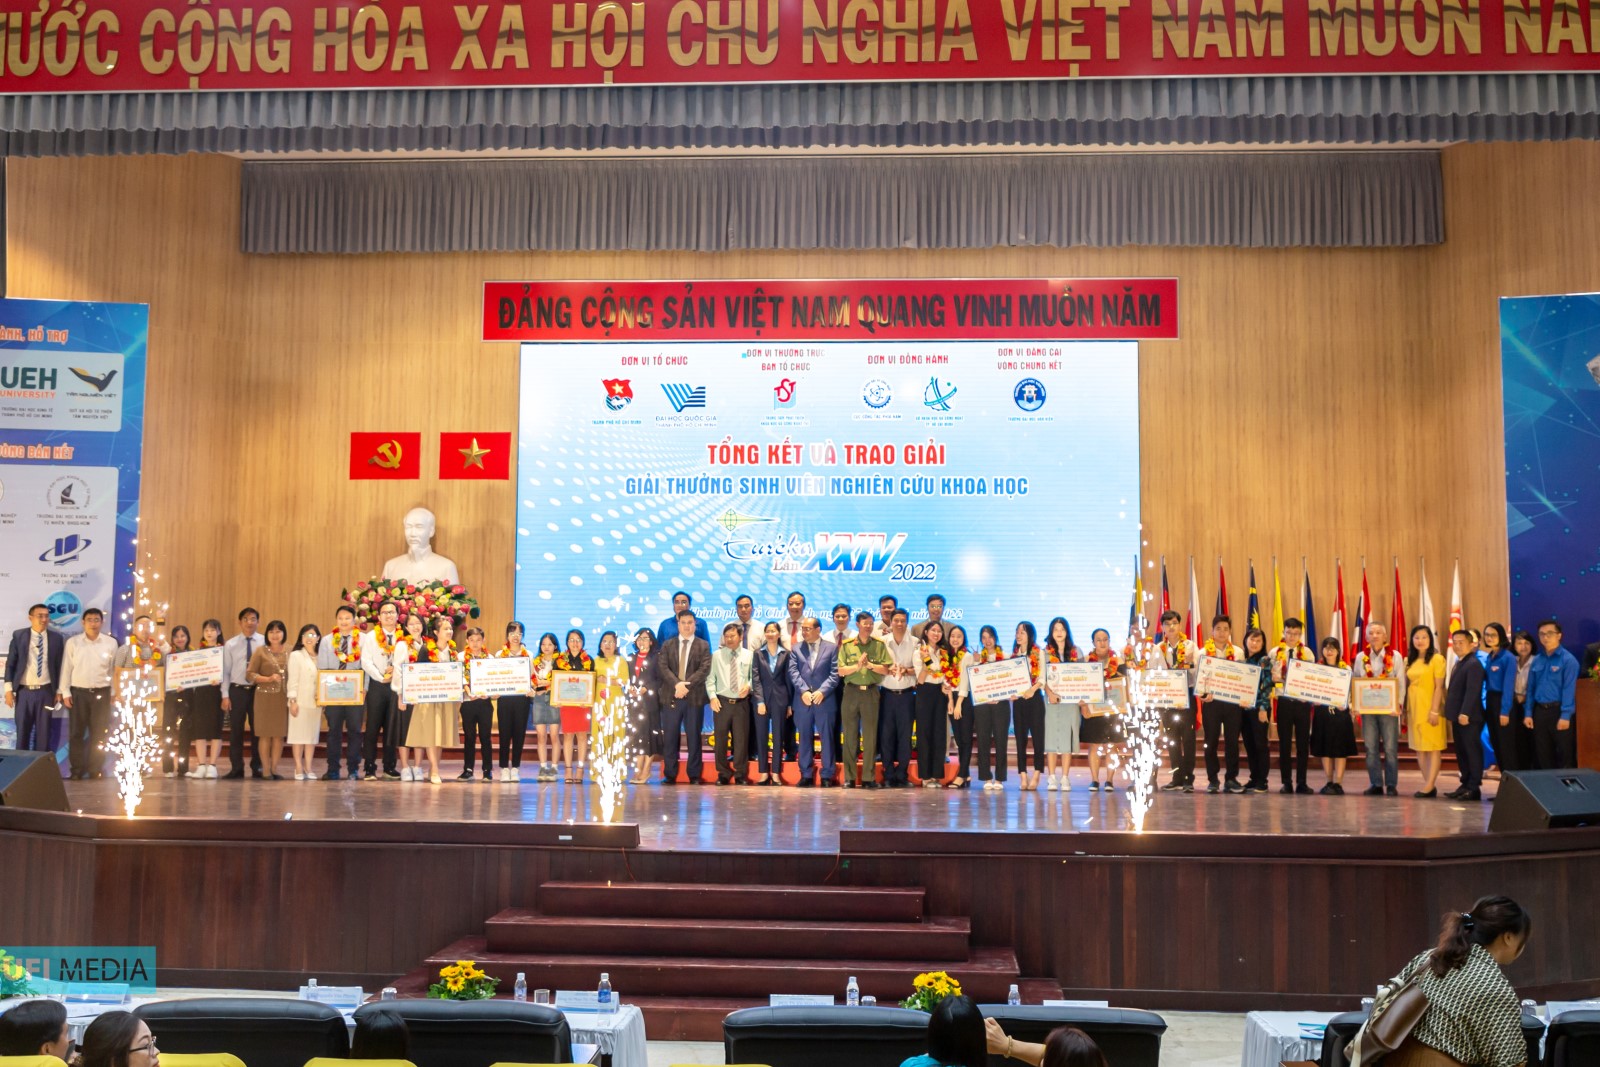 Trường ĐH Công nghiệp Thực phẩm TP.Hồ Chí Minh đạt nhiều giải cao tại Giải thưởng Sinh viên nghiên cứu khoa học Euréka lần thứ 24 năm 2022